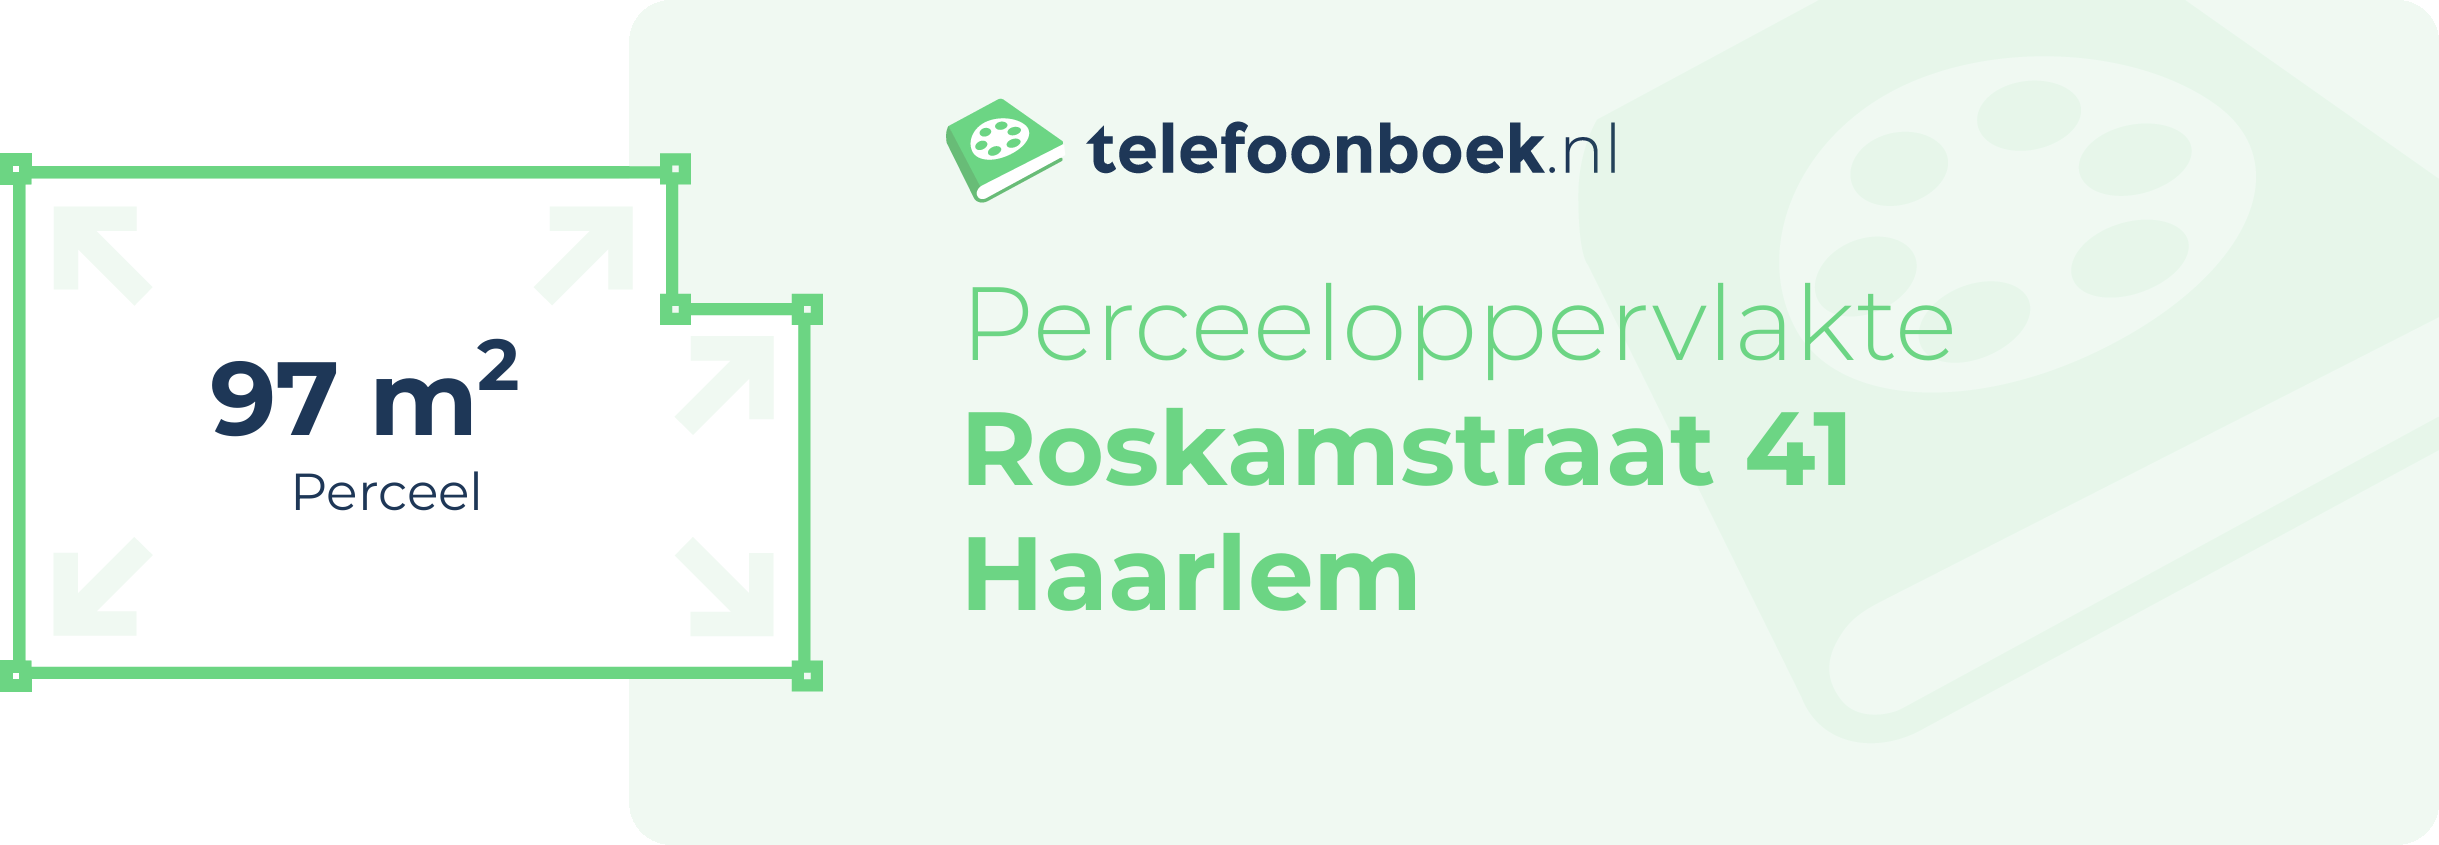 Perceeloppervlakte Roskamstraat 41 Haarlem